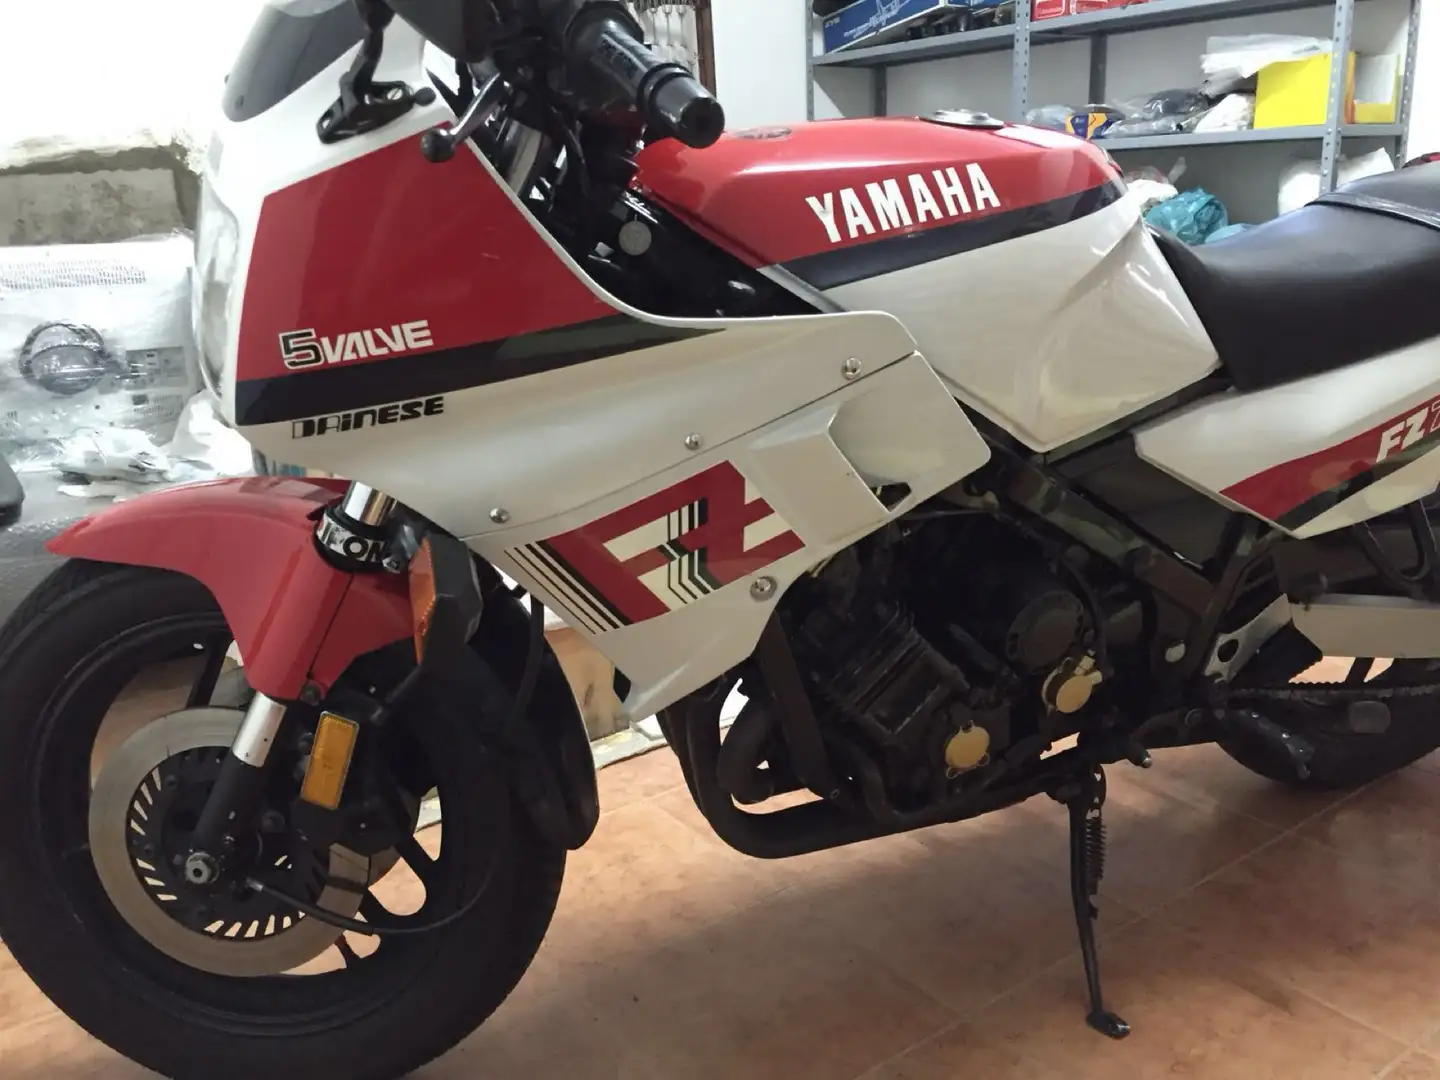 Yamaha FZ 750 immatricolazione canada colorazione bianca rossa Fehér - 1